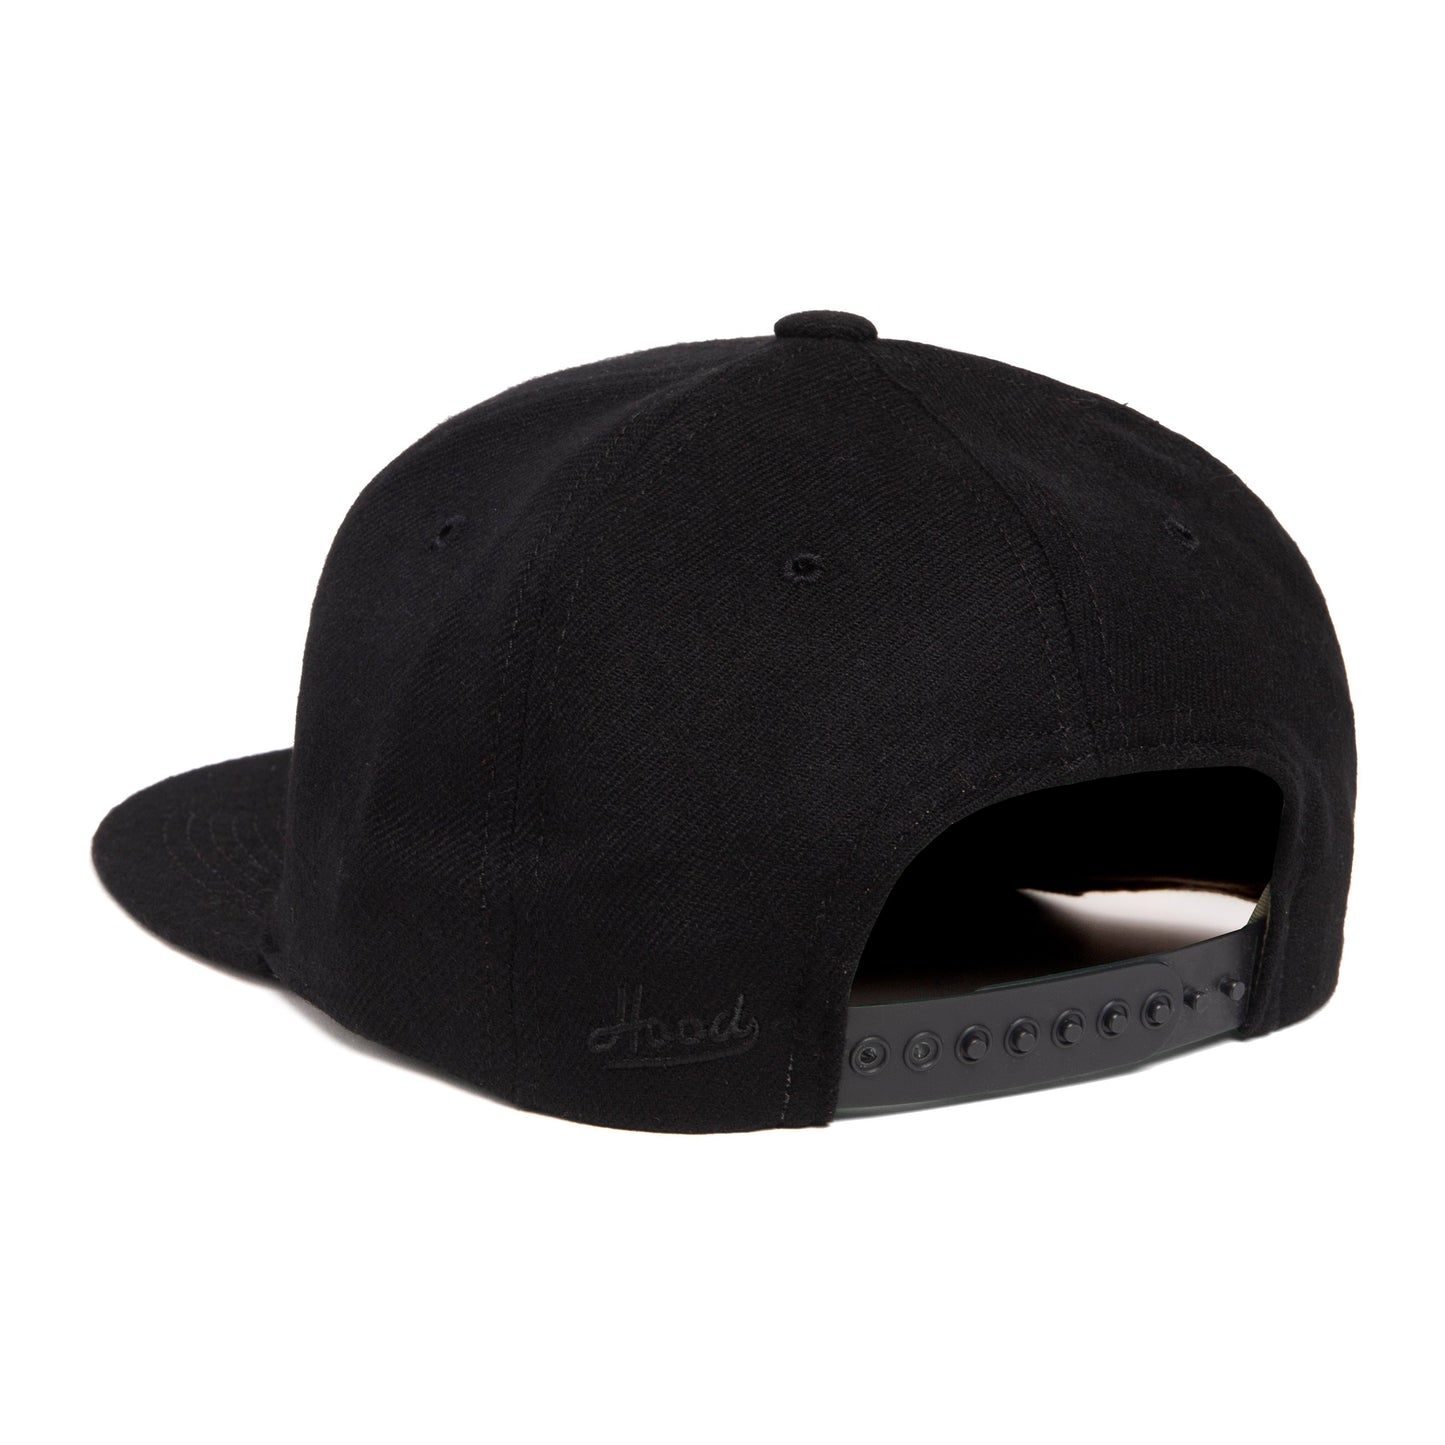 Bel Air Dodger Snapback Hat